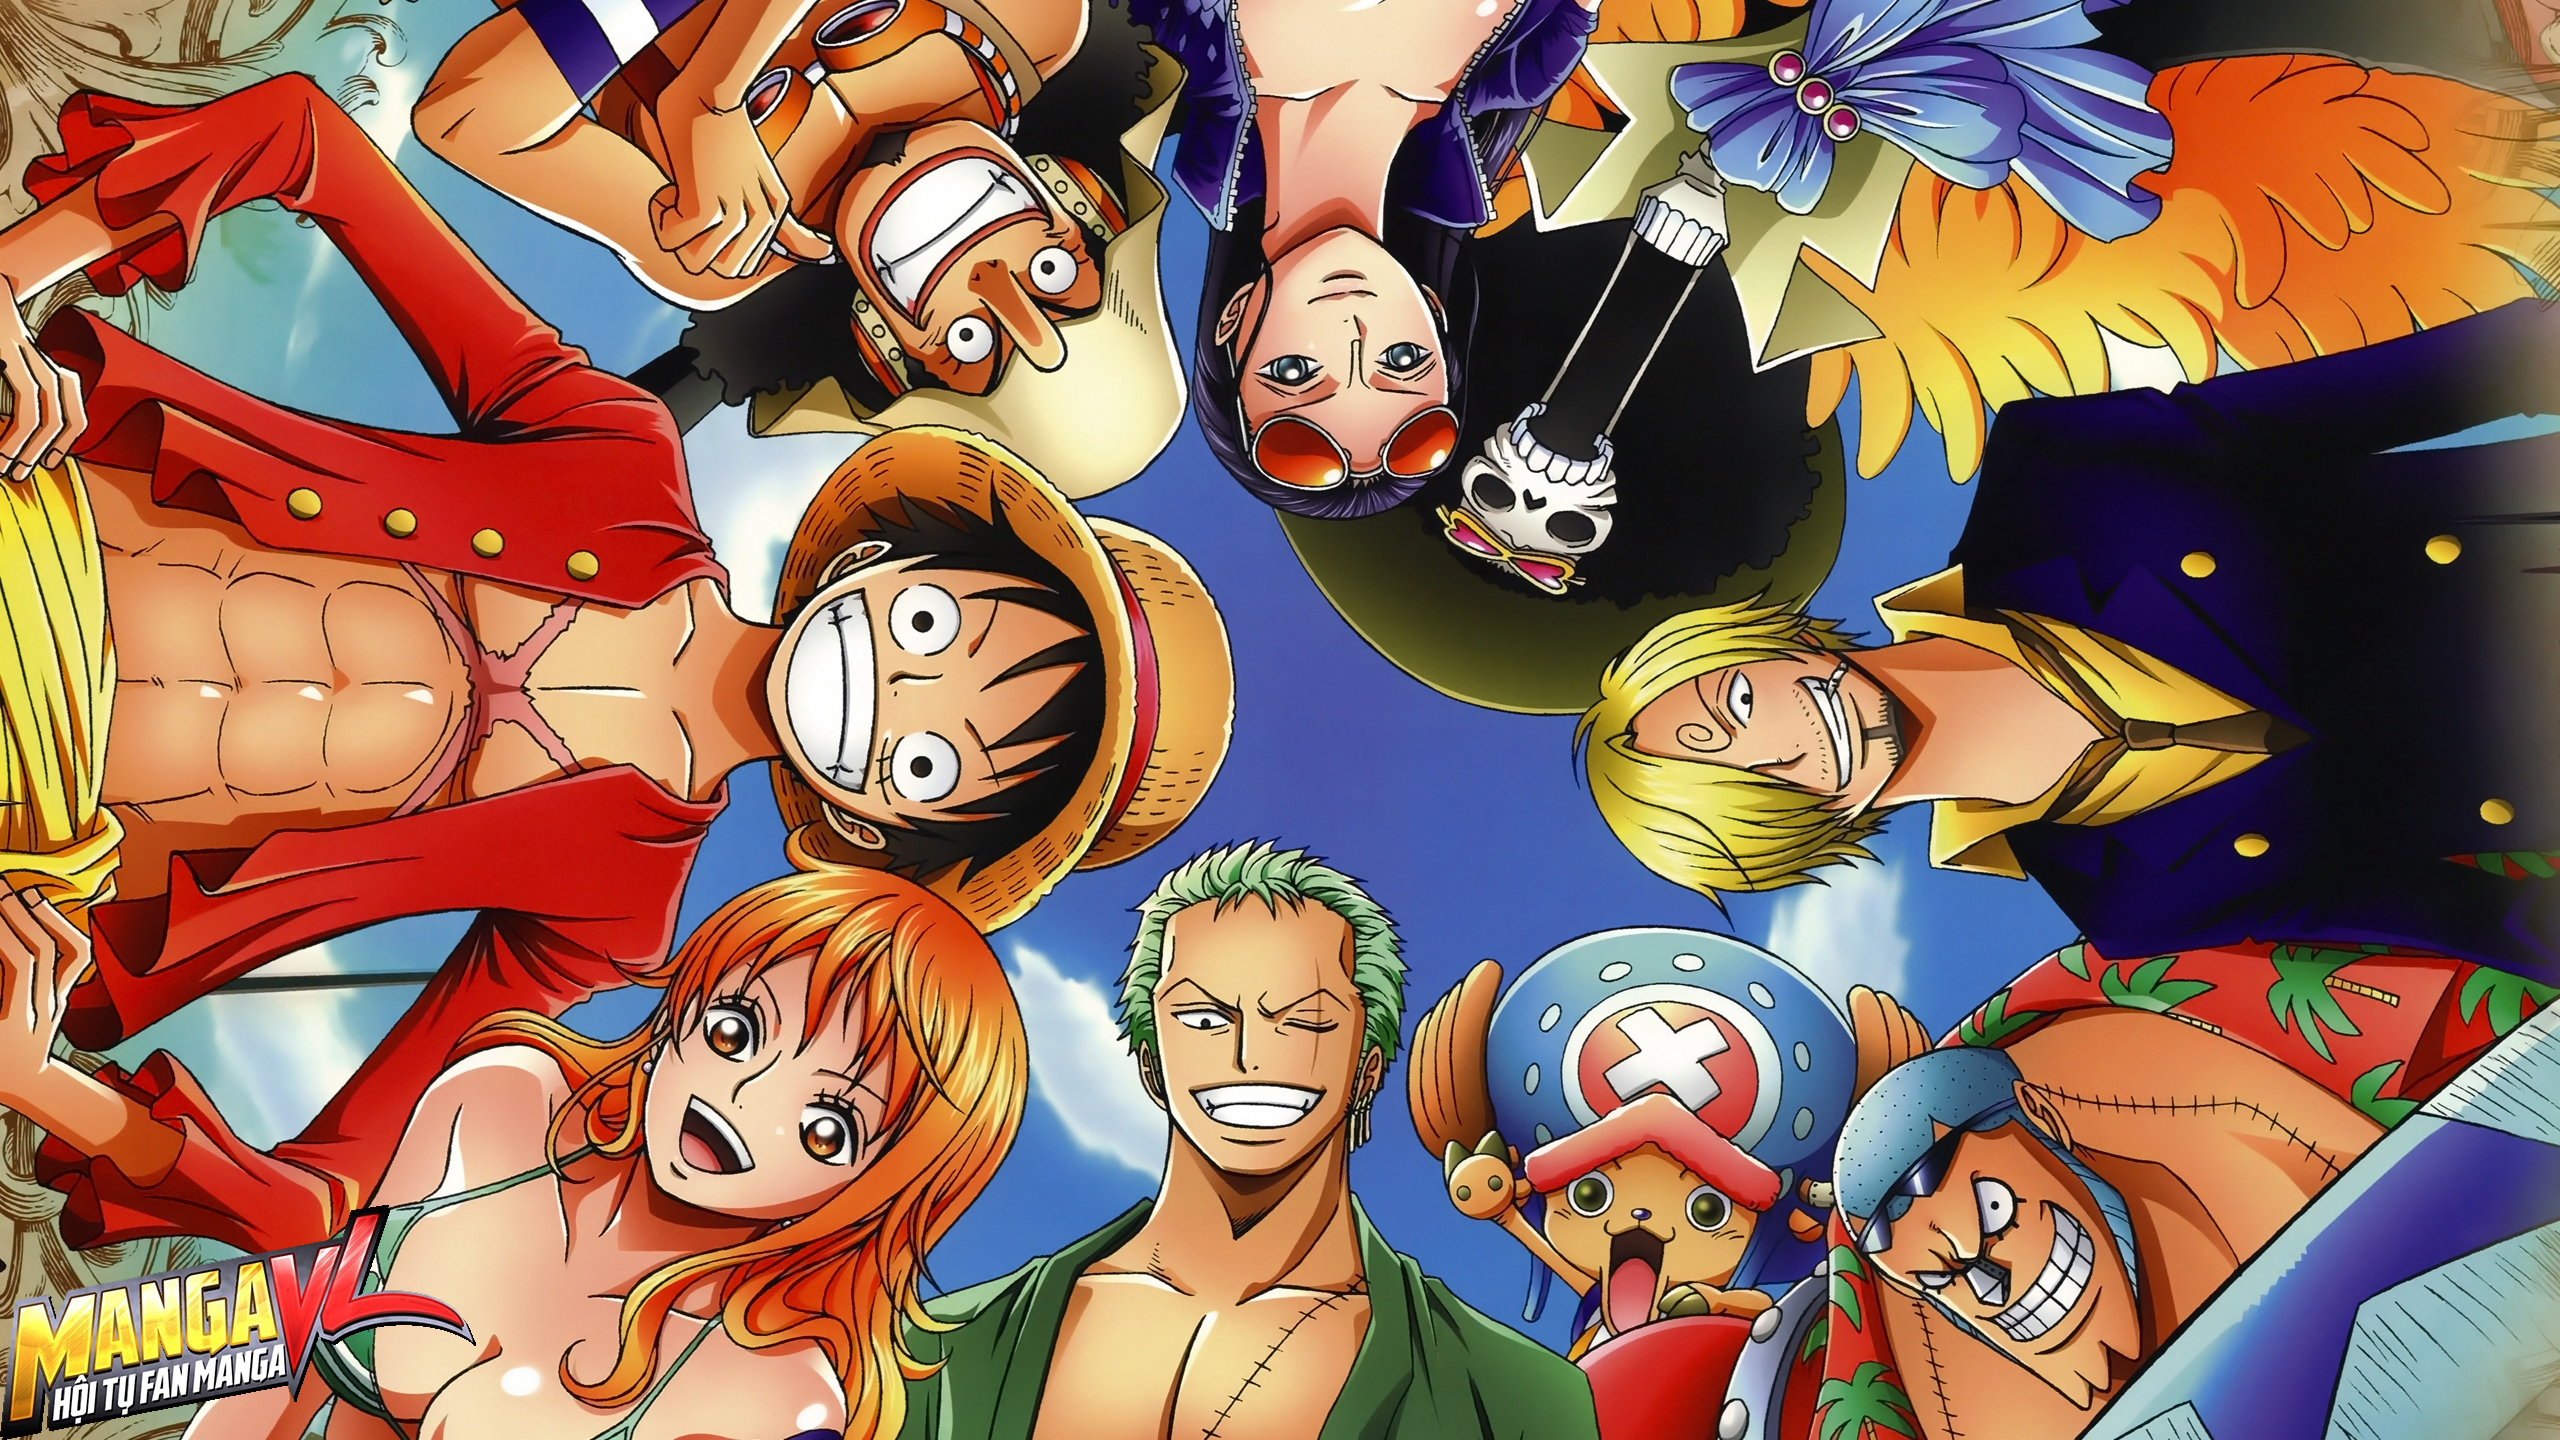 Hãy khám phá vẻ đẹp tiềm ẩn của nhân vật nữ trong One Piece qua hình ảnh đầy màu sắc và cuốn hút. Từ ánh mắt cho đến cử chỉ, đều phản ánh sức hút đầy quyến rũ của nhân vật nữ trong truyện này. Nhấn vào hình ảnh để khám phá thôi nào!